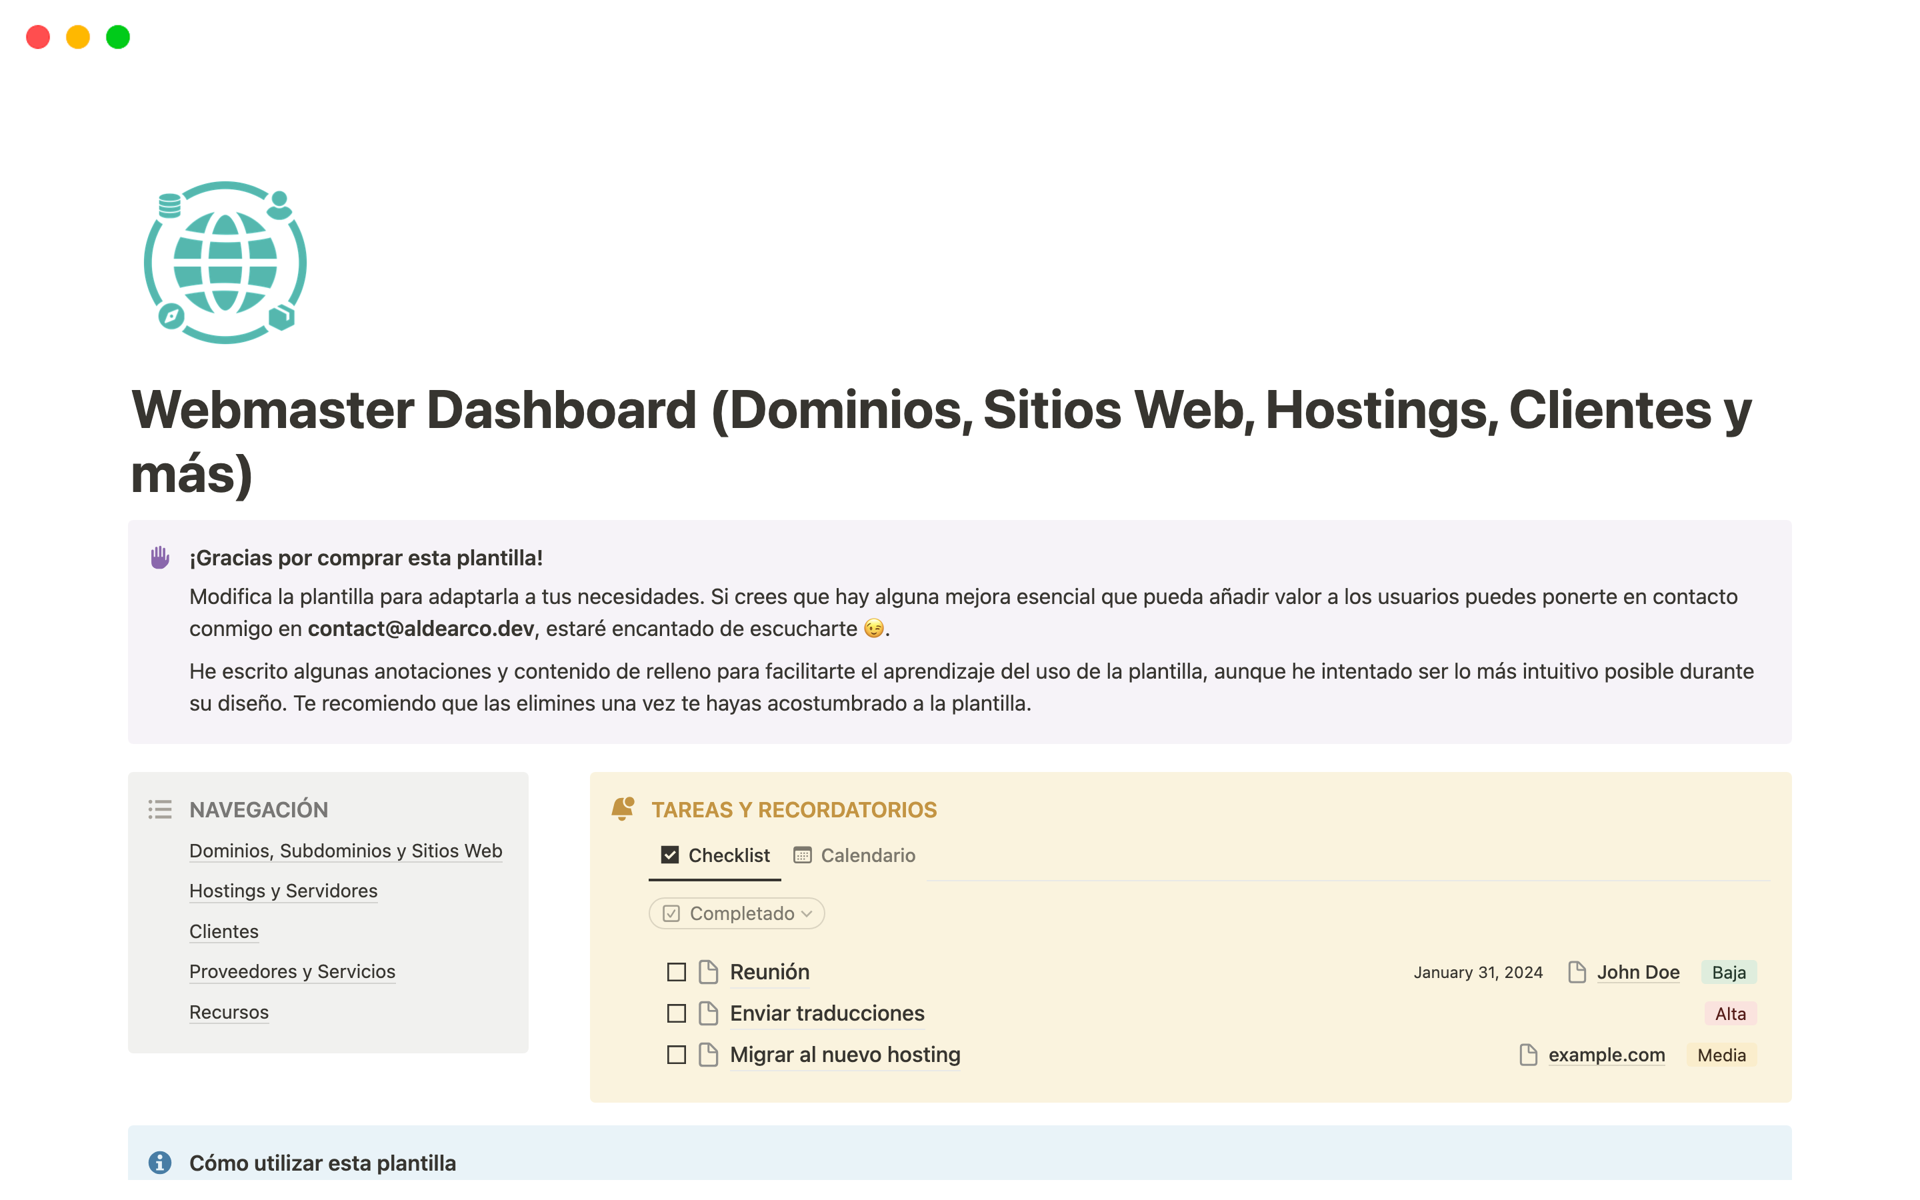 Eine Vorlagenvorschau für Webmaster Dashboard (Dominios, Webs, Hostings)